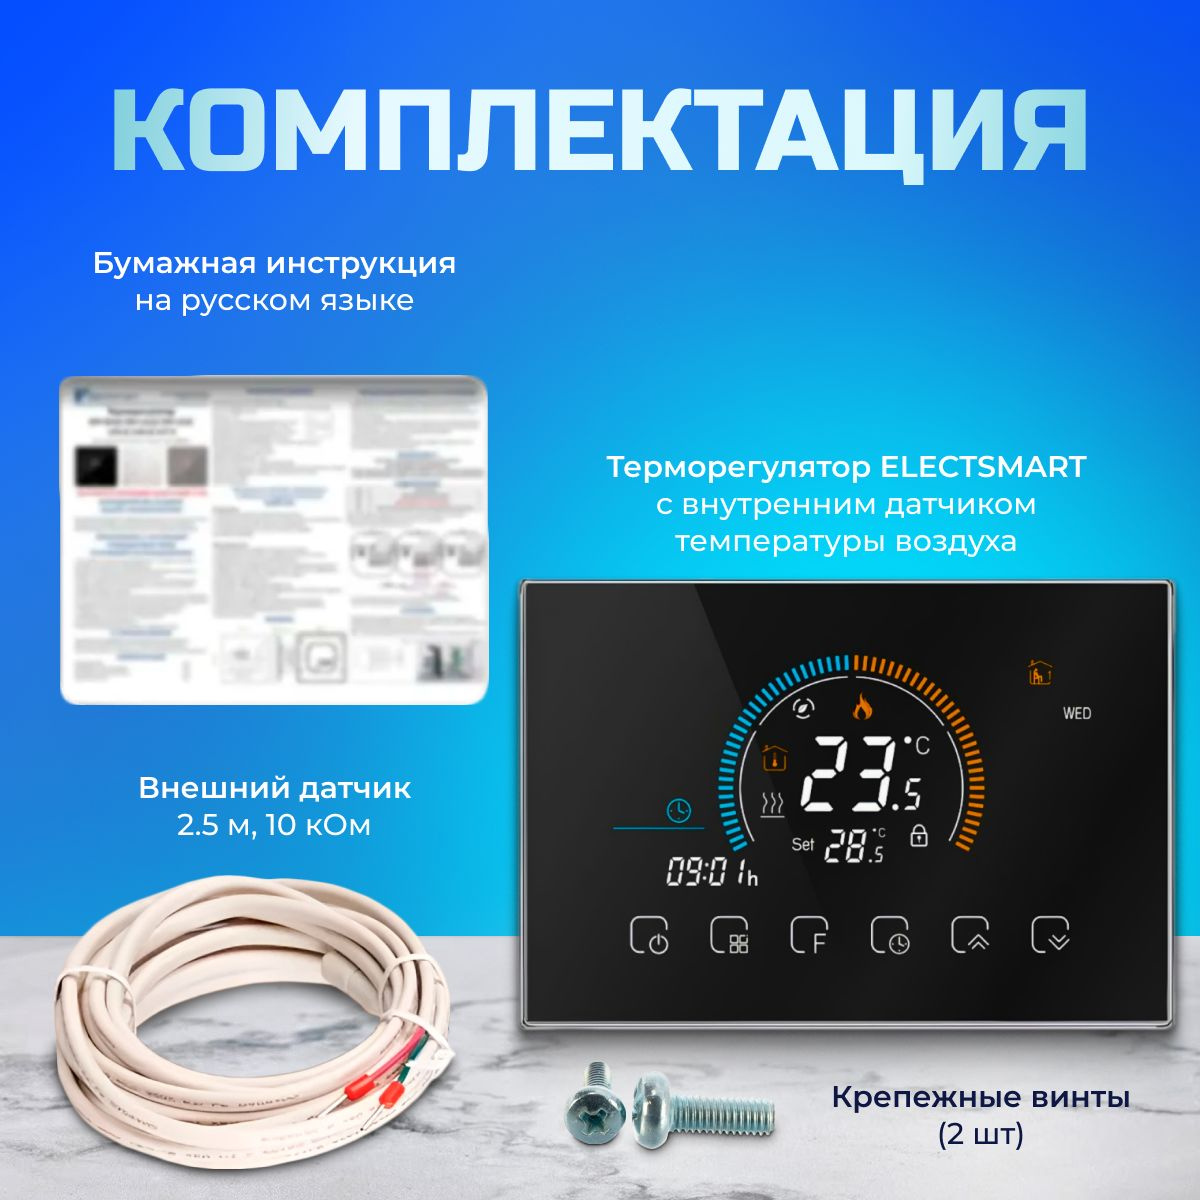 Комплектация 1. Терморегулятор ELECTSMART EST-500 2. Паспорт-инструкция на русском языке 3. Фирменная коробка 4. Крепления 5. Датчик температуры пола 2,5 метра 10 кОм